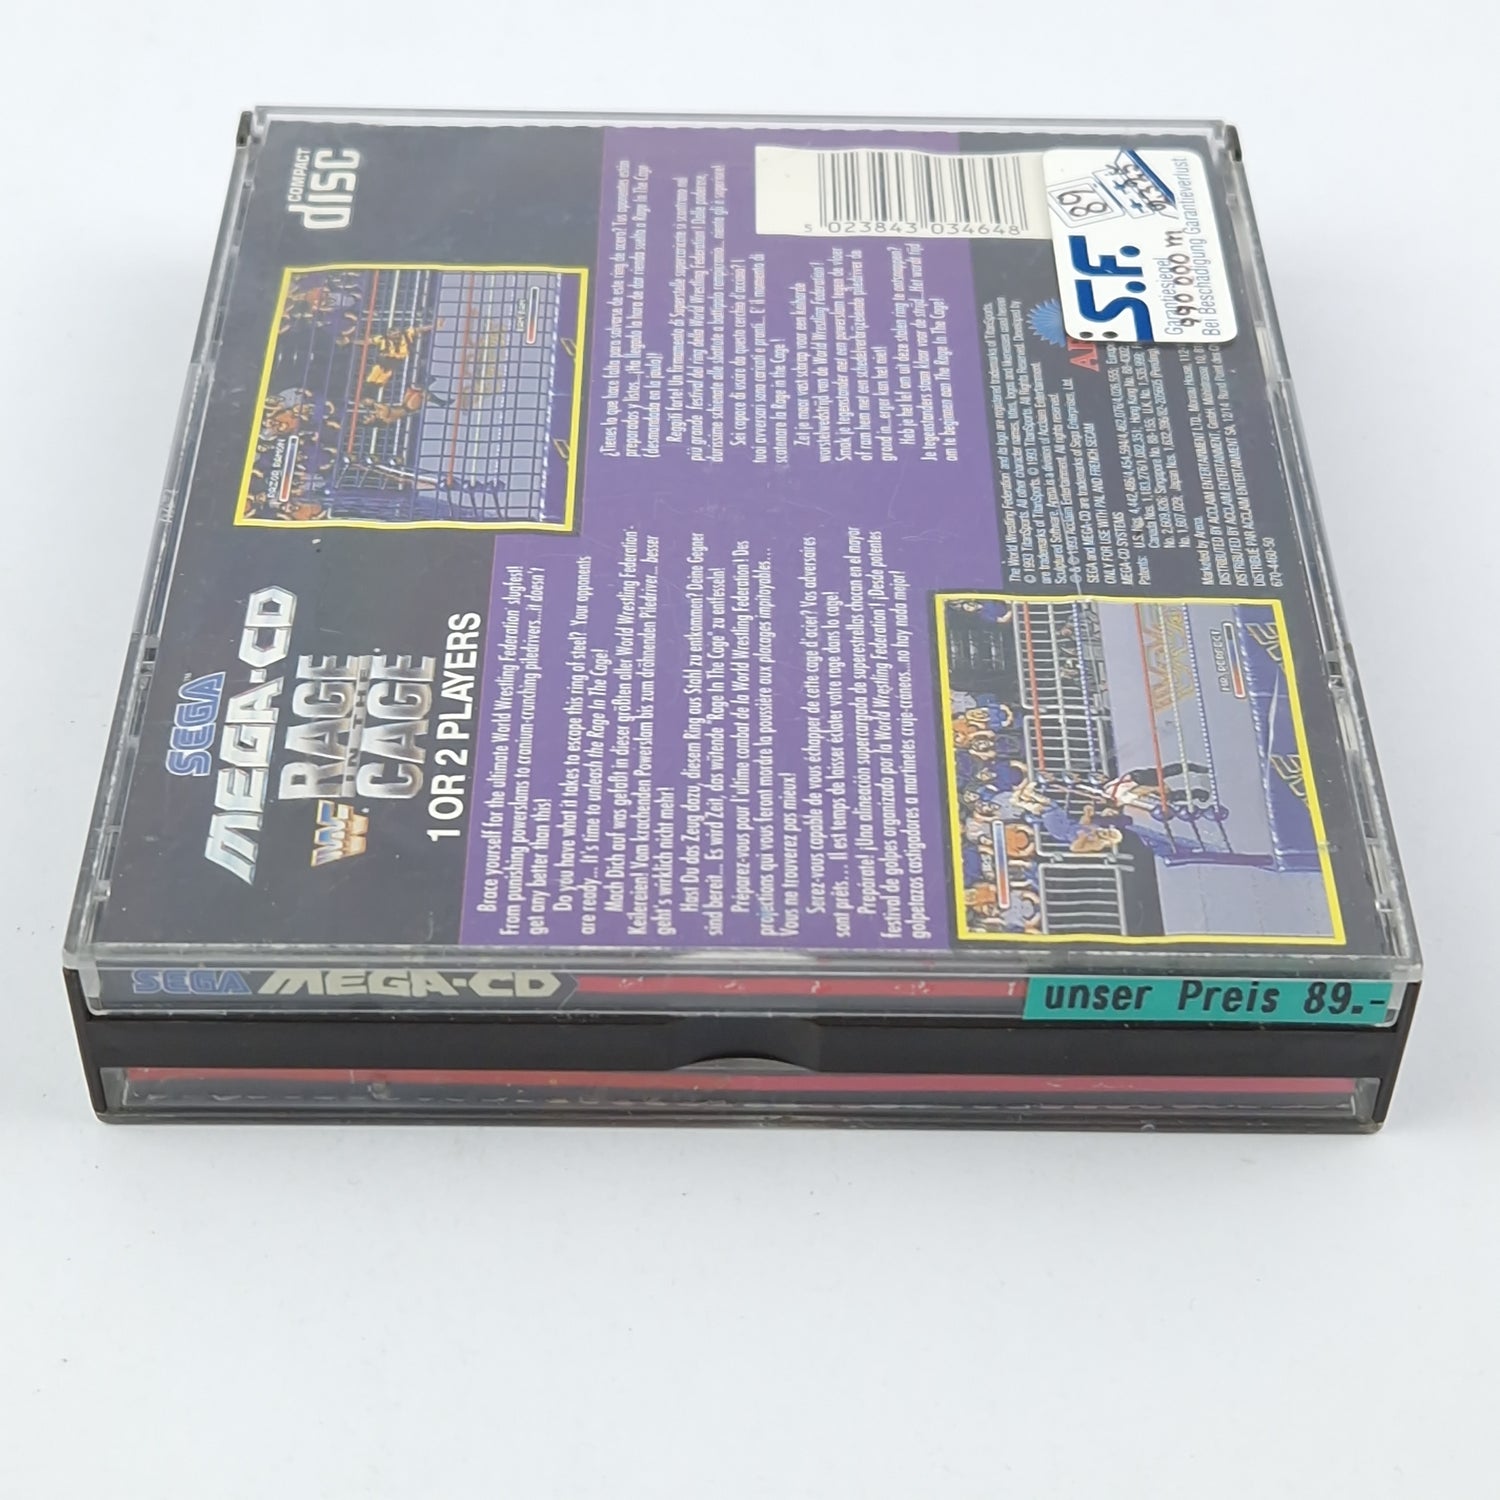 Sega Mega CD game: WWF Rage in the Cage - CD instructions OVP cib / MCD Wrestling